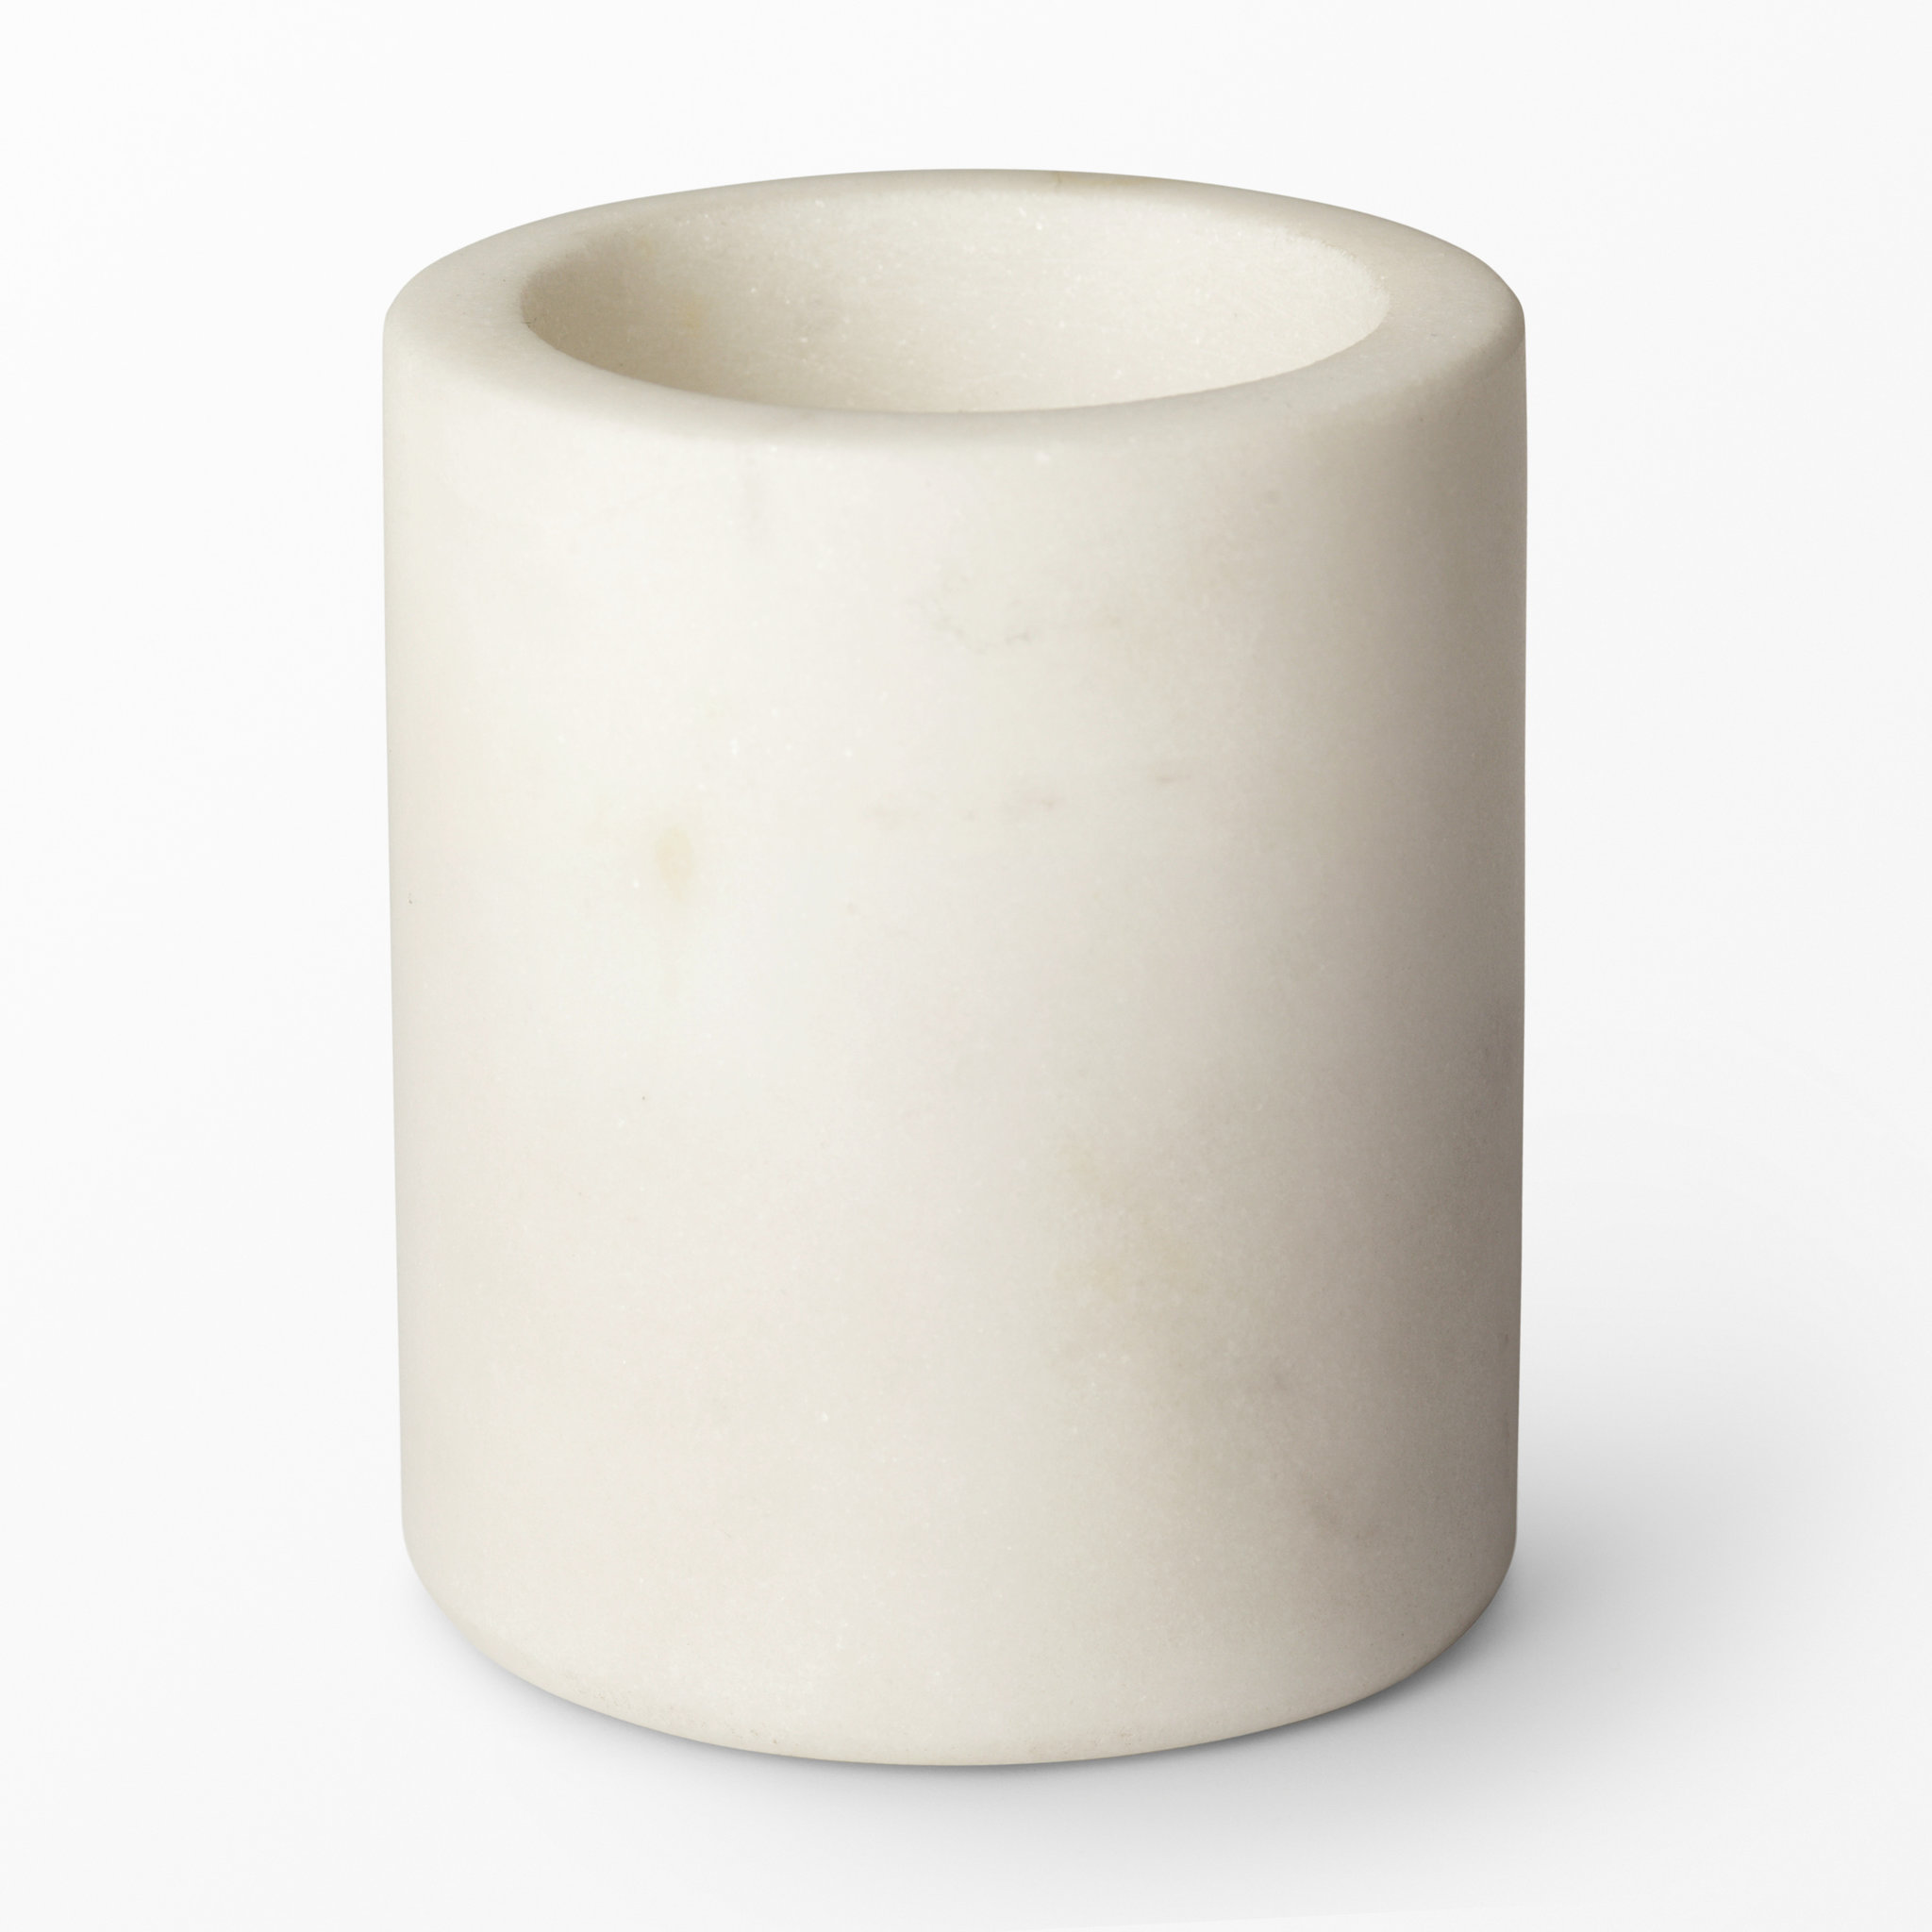 Värmeljushållare marmor, 4,7x5,7 cm, Vit